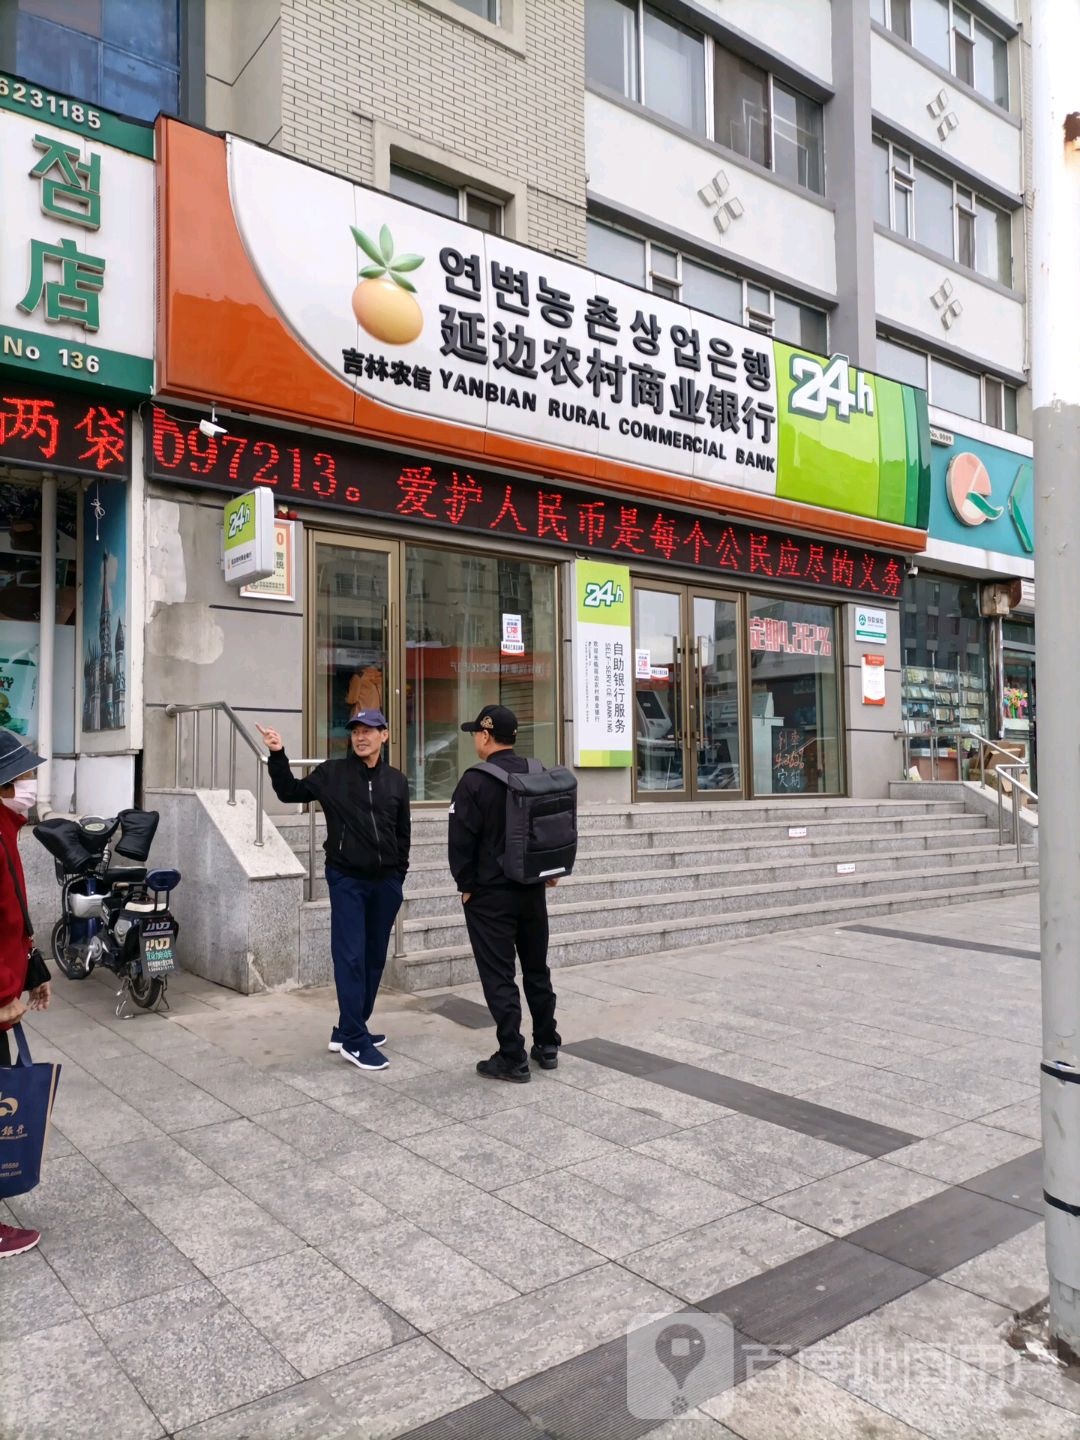 吉林农信延边农村商业银行24小士自助银行(延龙分理处)